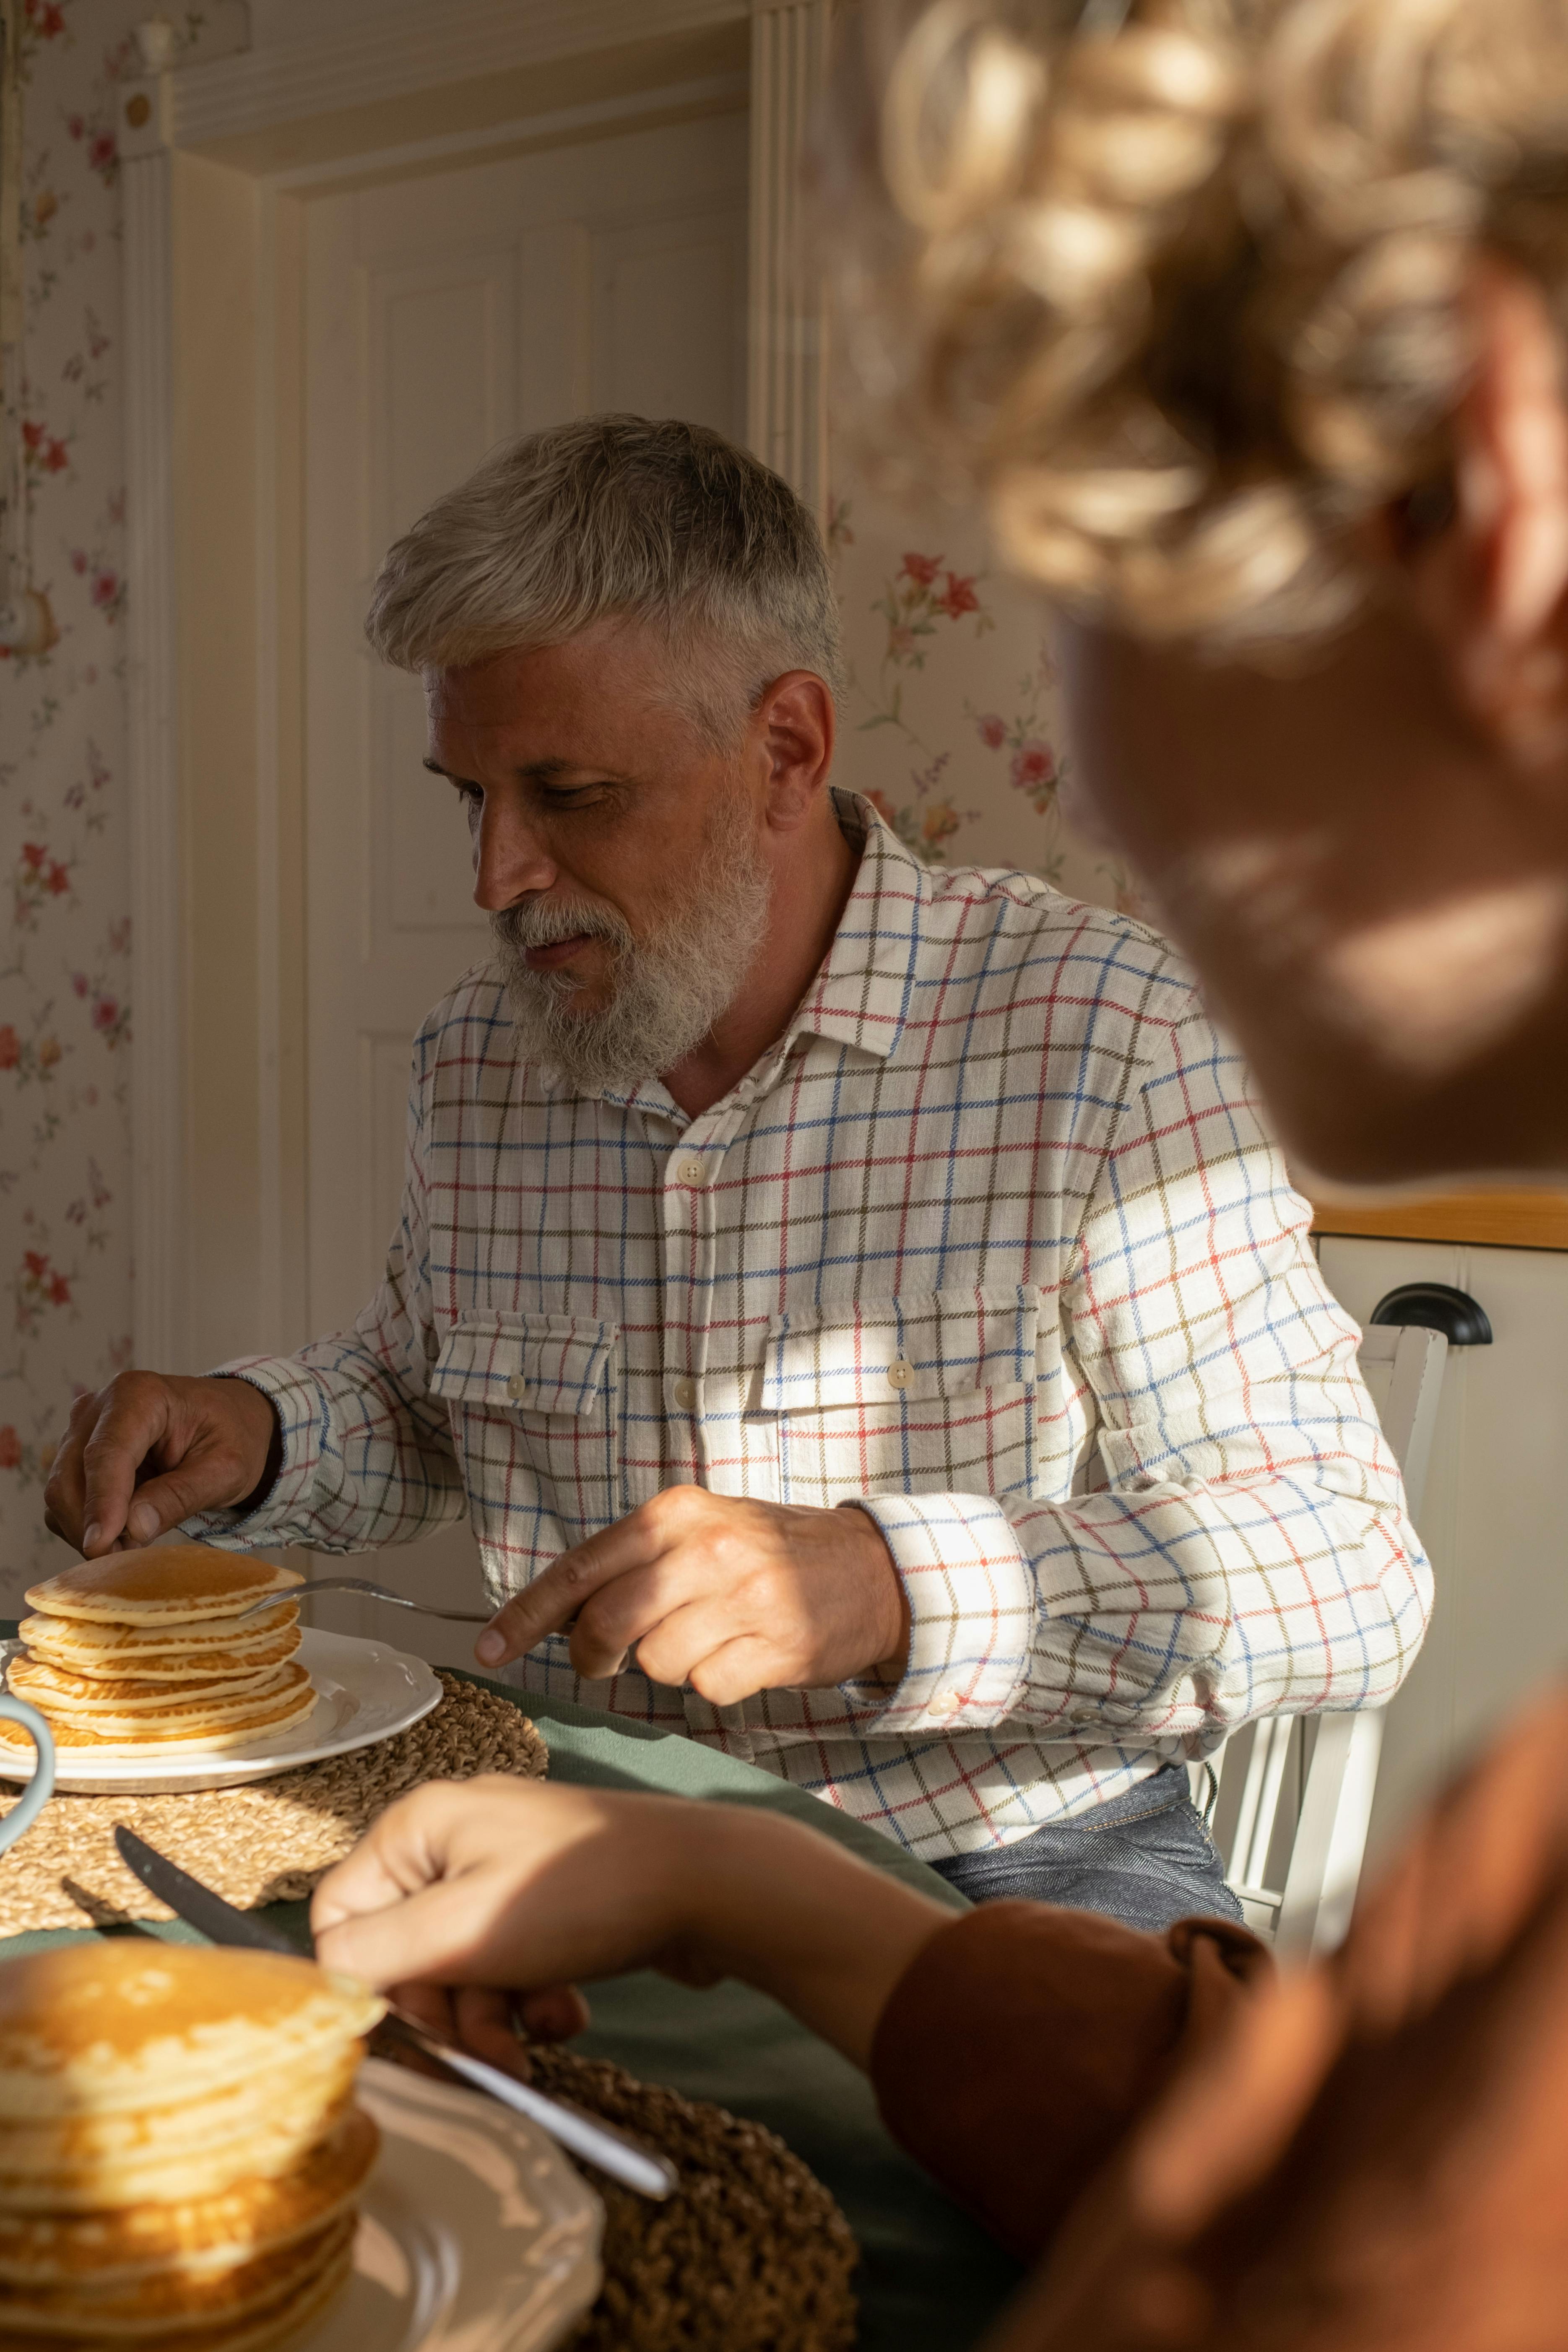 An older man eating his breakfast | Source: Pexels